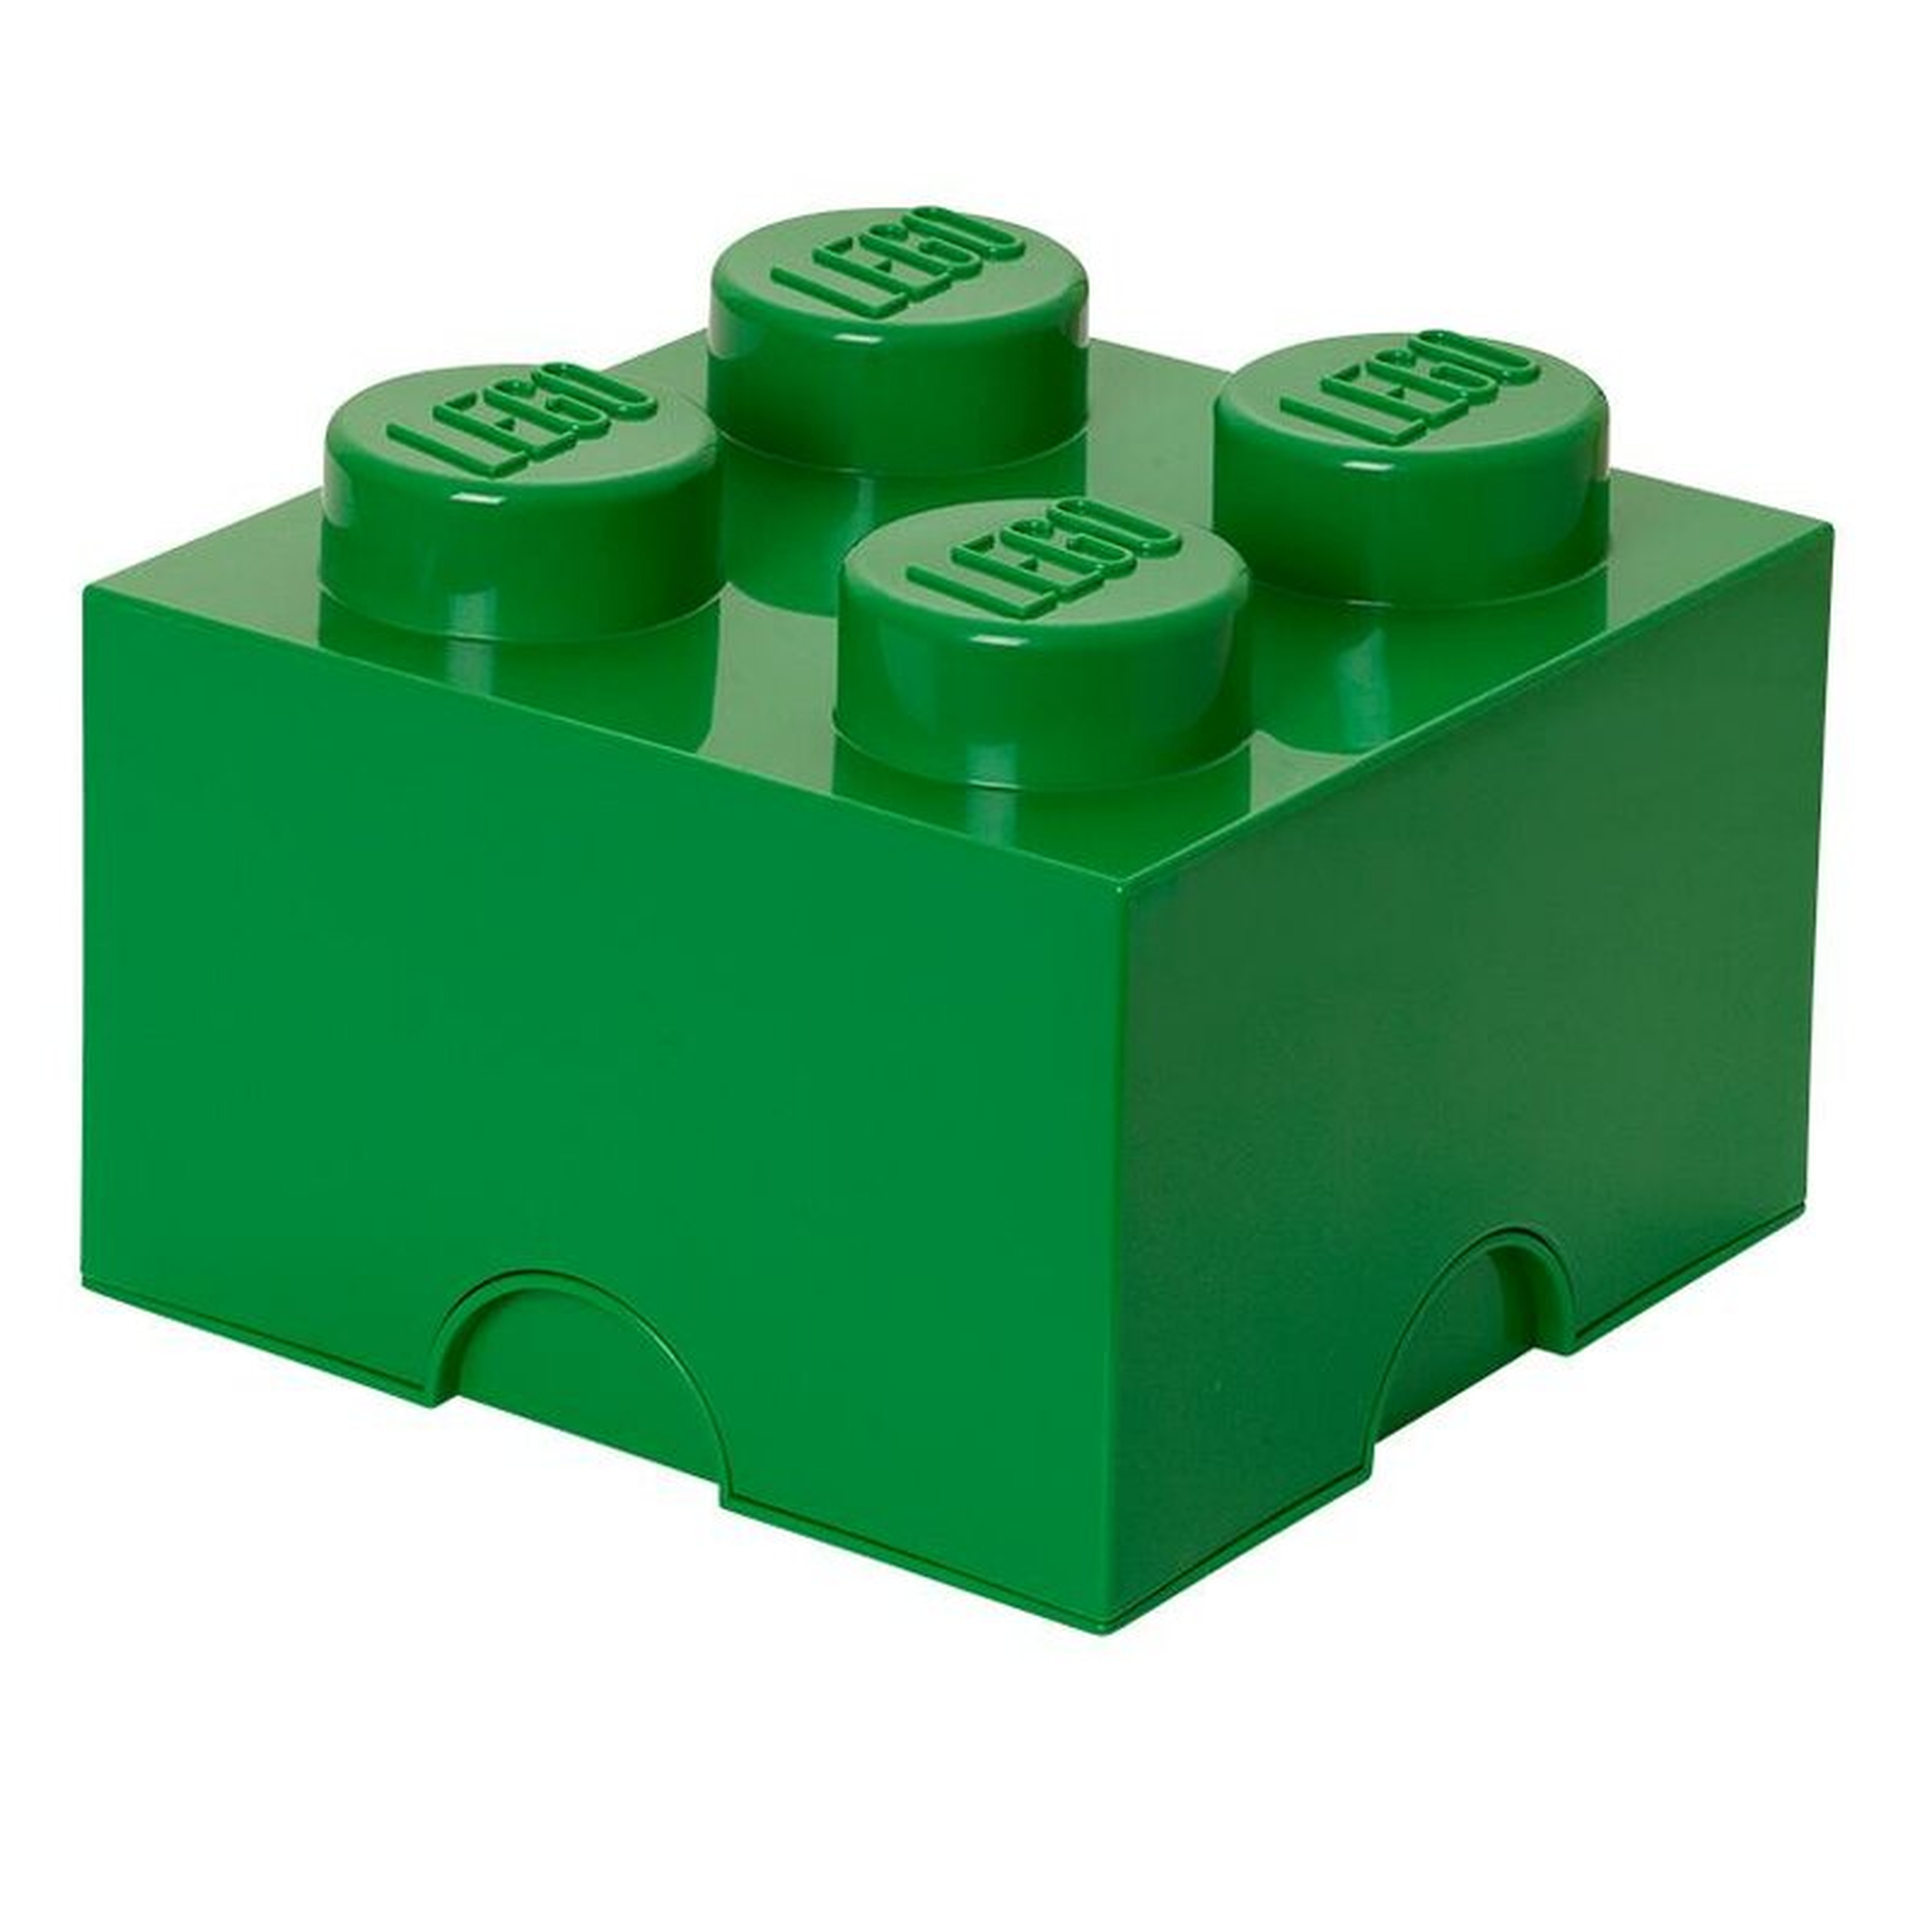 LEGO Storage Brick 4 Toy Box - Wayfair